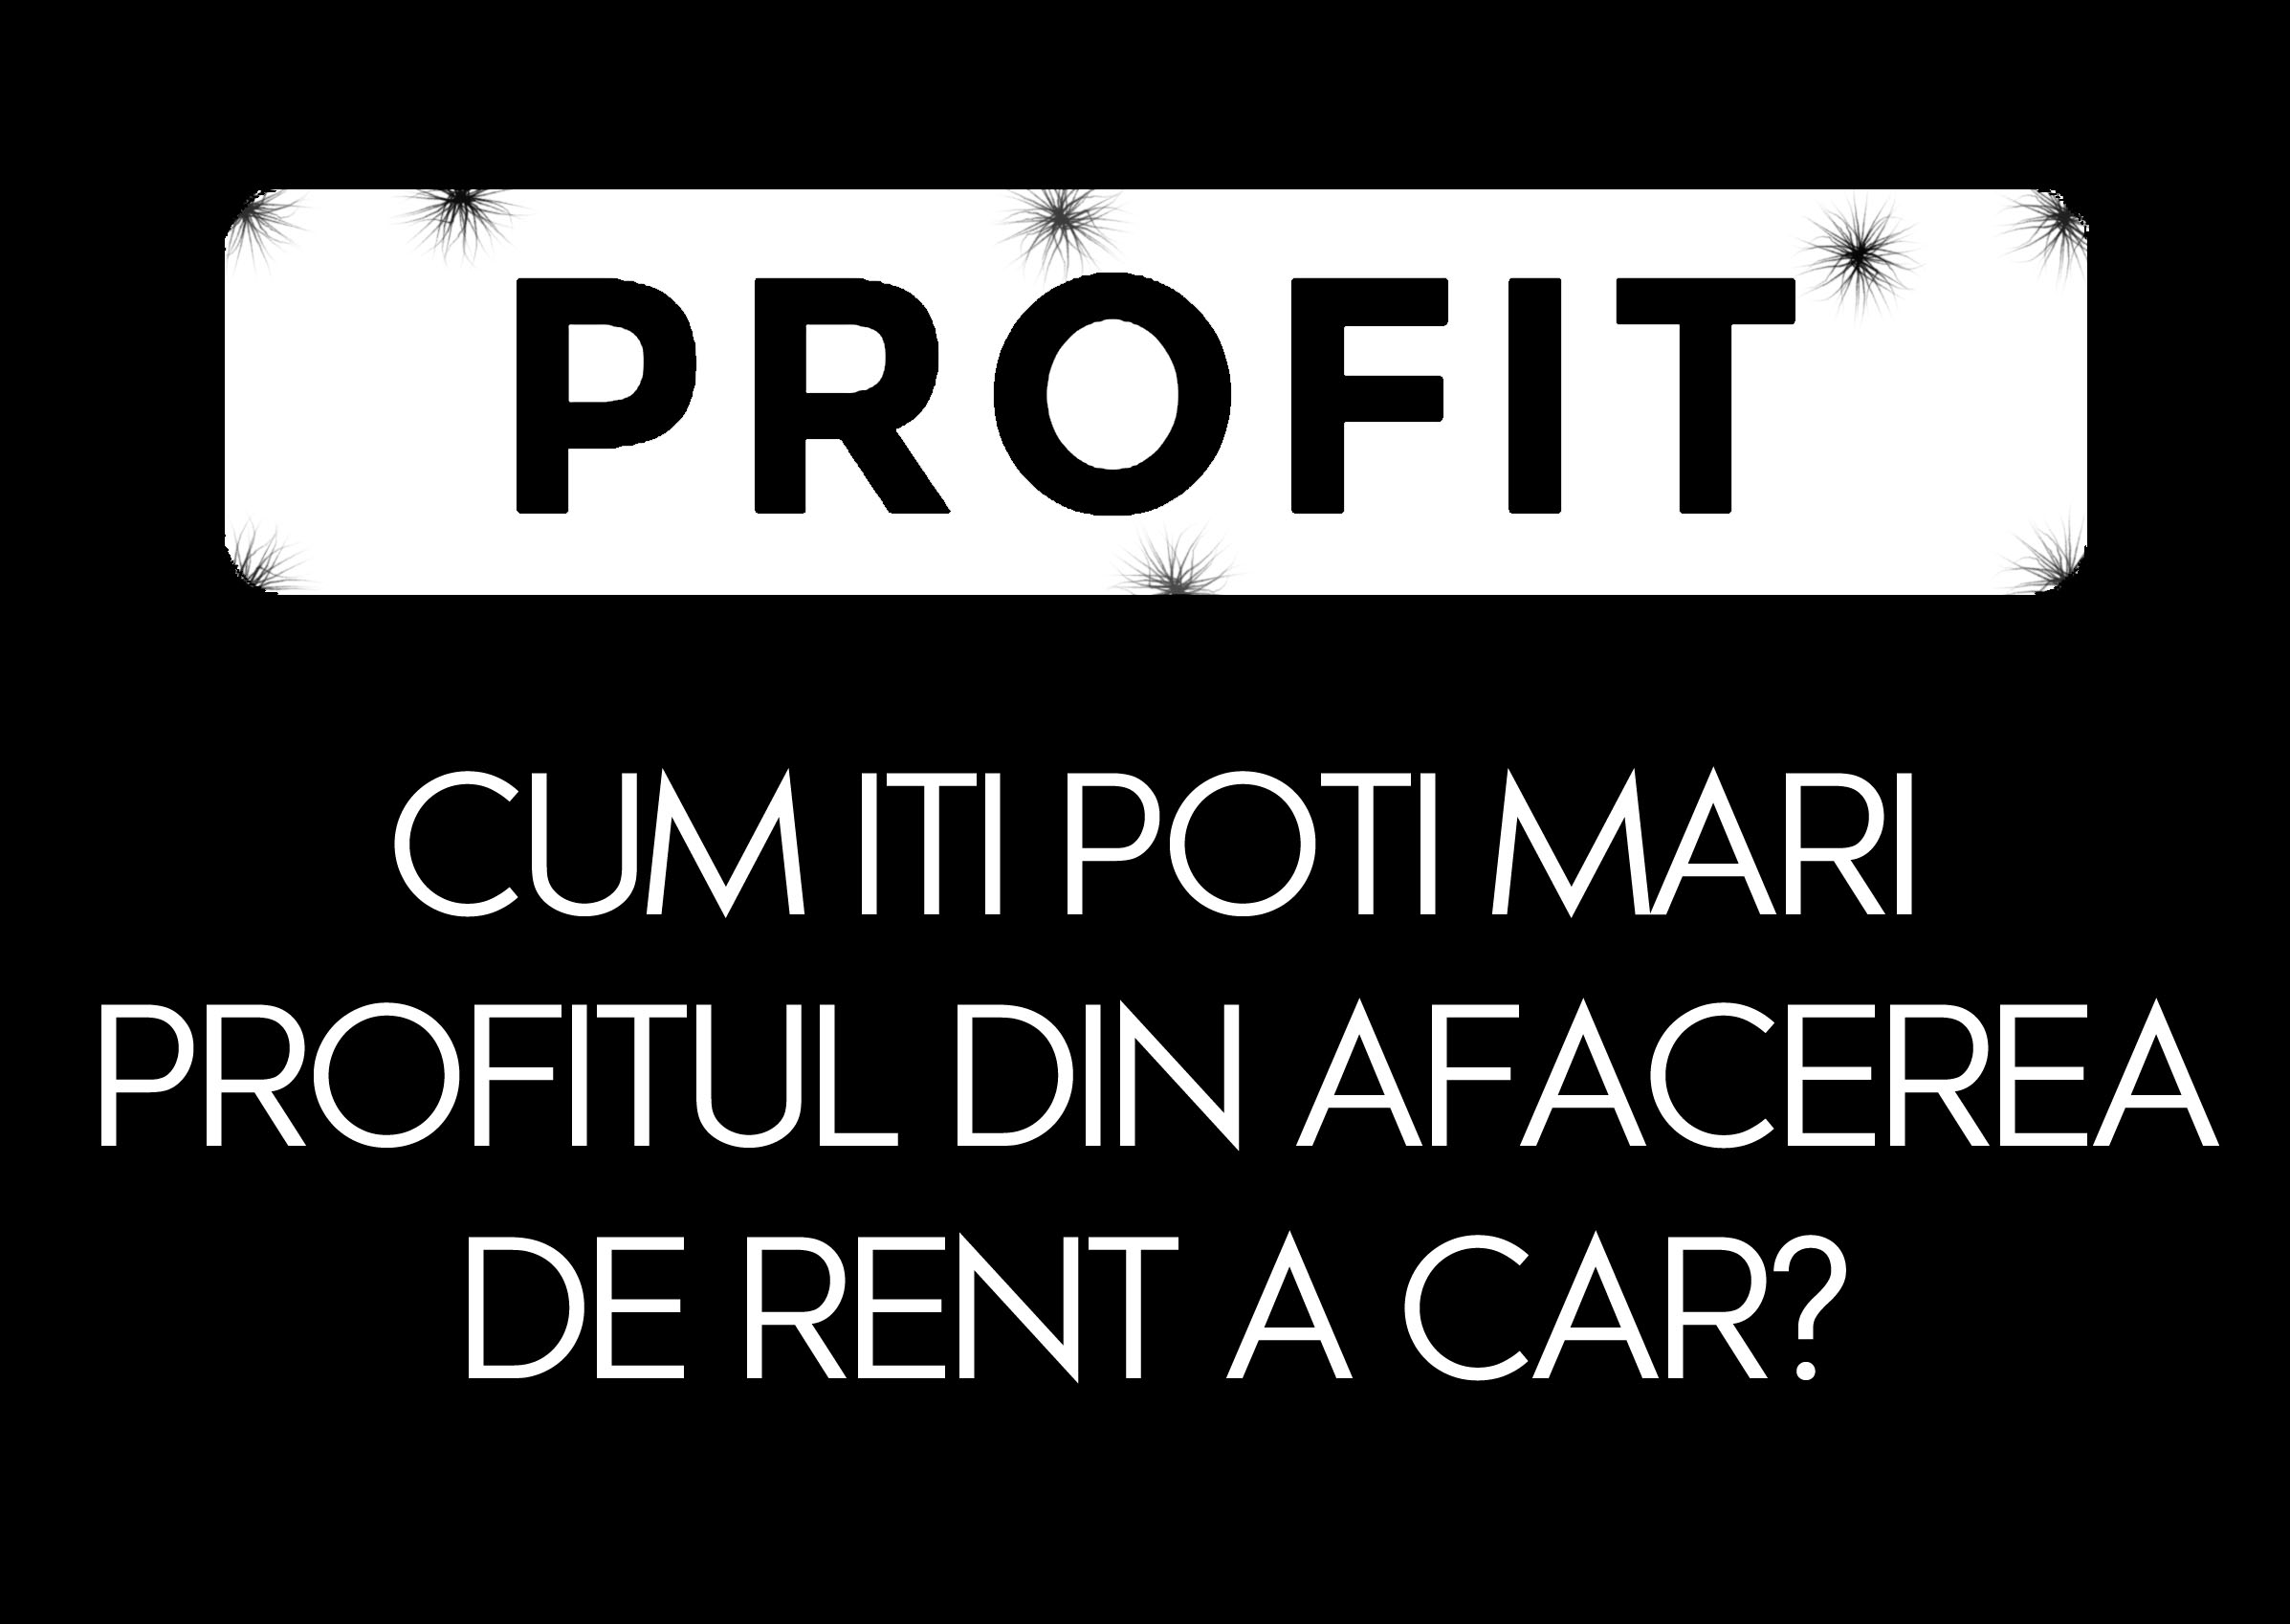 Cum iti poti mari profitul din afacerea de rent a car?